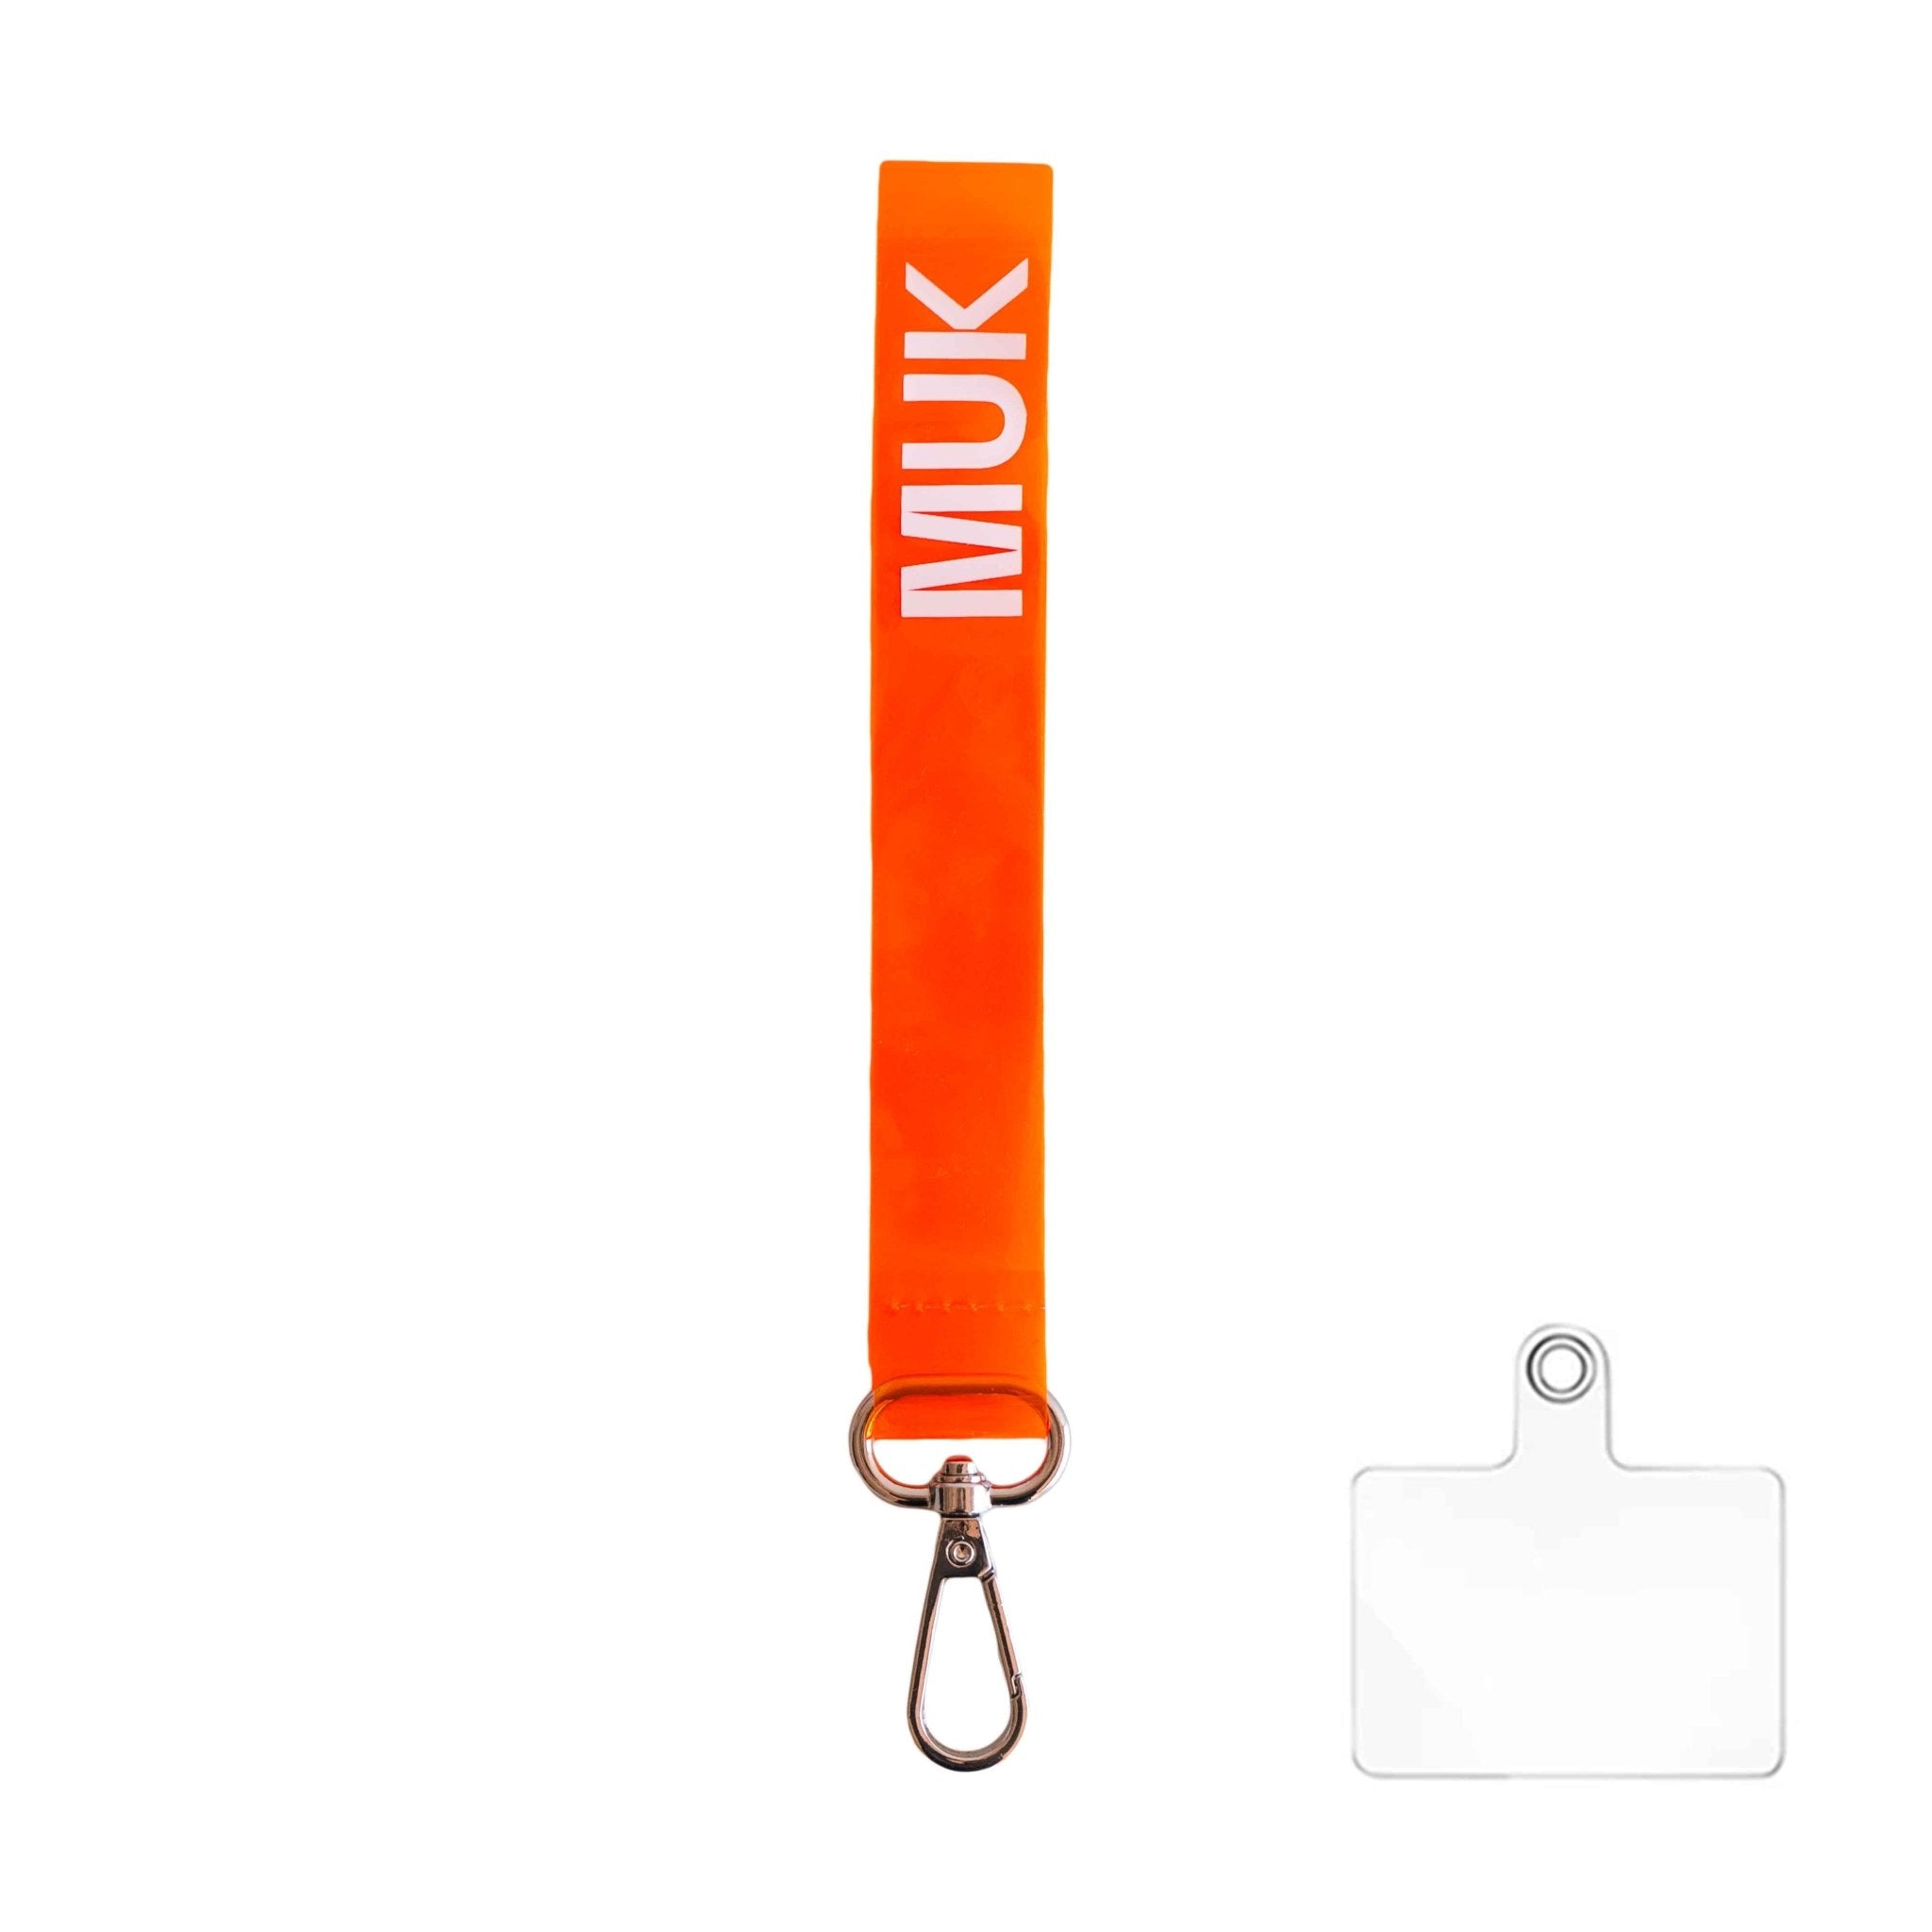 Cuerda semitransparente de color naranja flúor con la opción de personalización y el logo de Muk. Dispone de un mosquetón para poder usar como phonestrap con el adaptador de cuerda universal (incluido), o bien, como llavero.
